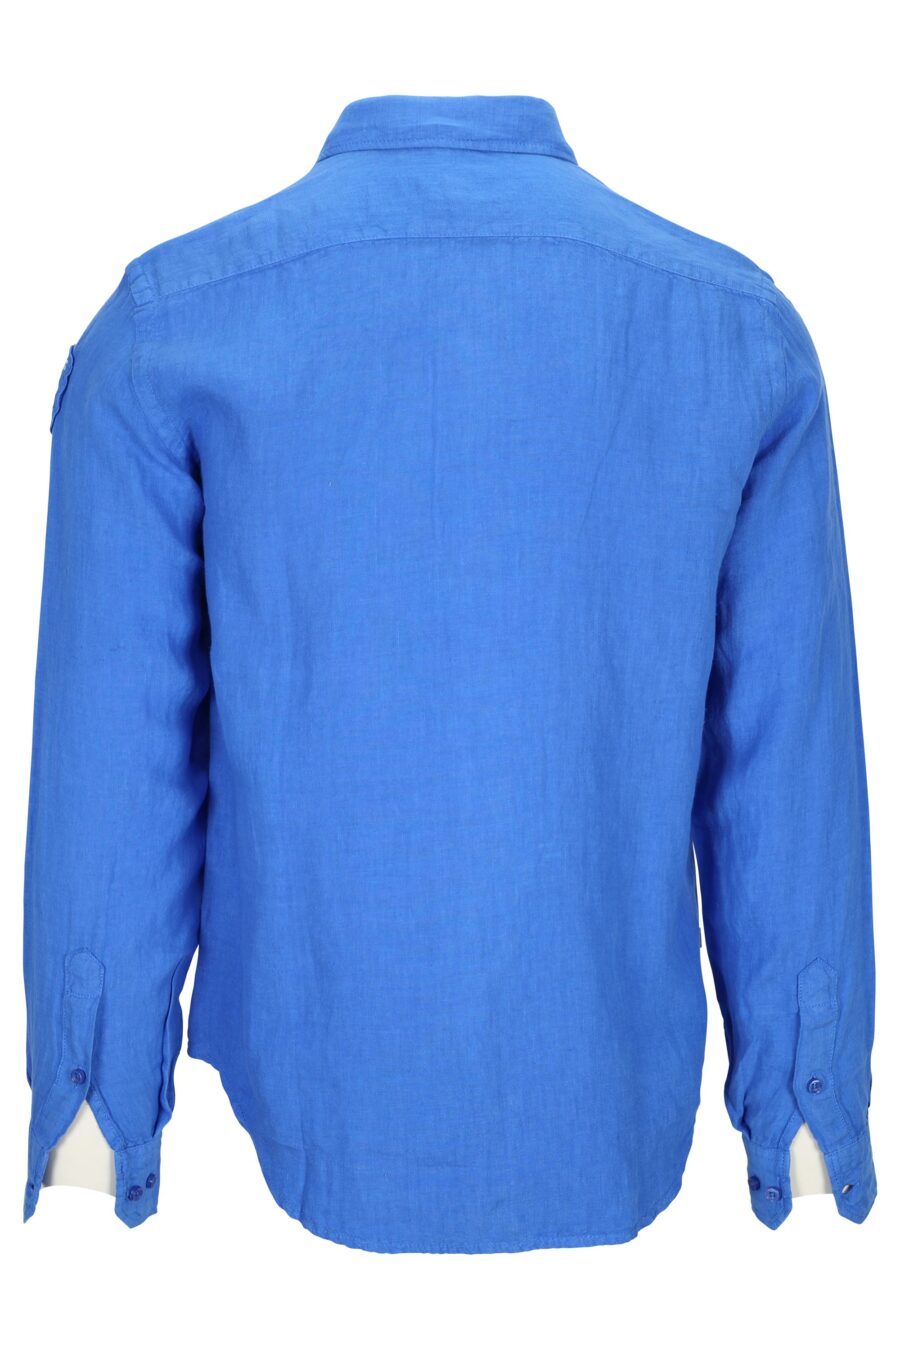 Camisa azul con minilogo escudo - 8058610776176 1